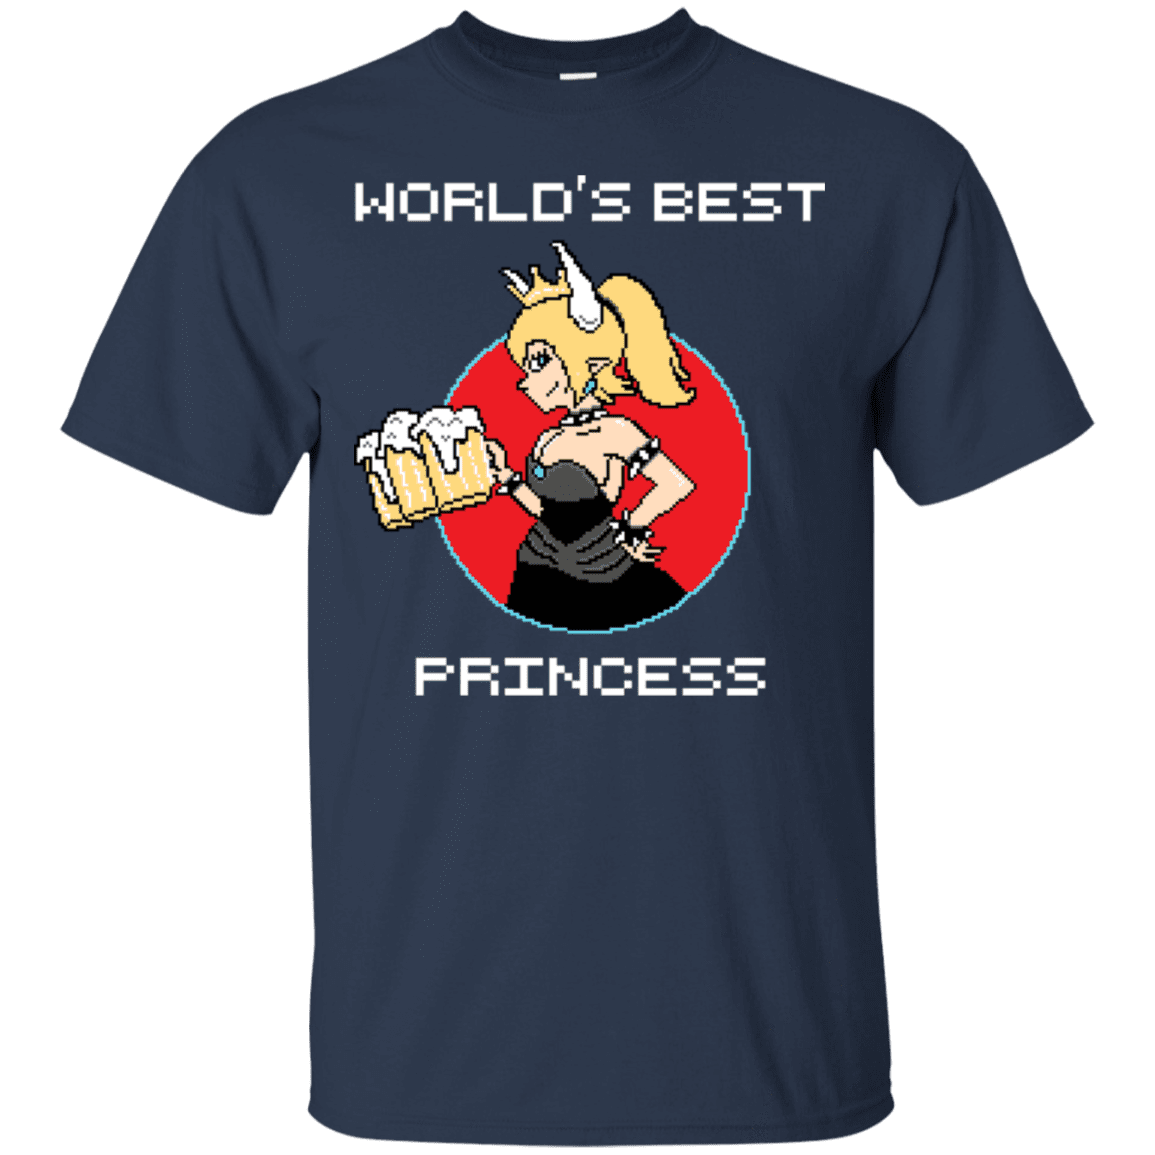 T-Shirts Navy / S World's Best Princess T-Shirt